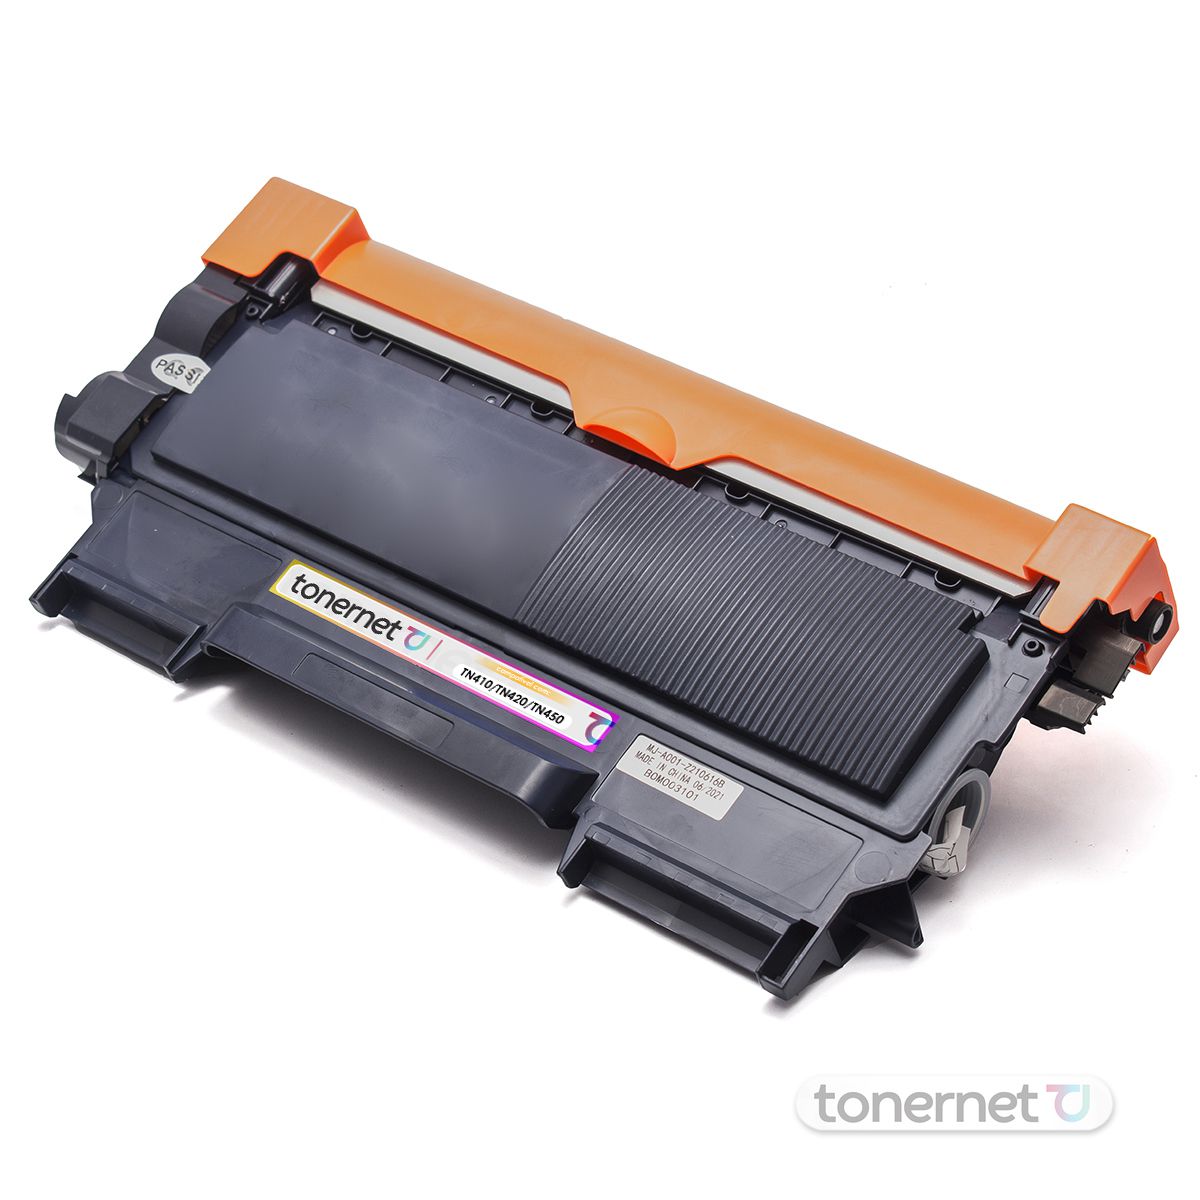 Cartucho Toner Tn410 Compatível Brother | Tonernet - Cartuchos, Toners e  Tintas para Impressão | Tonernet